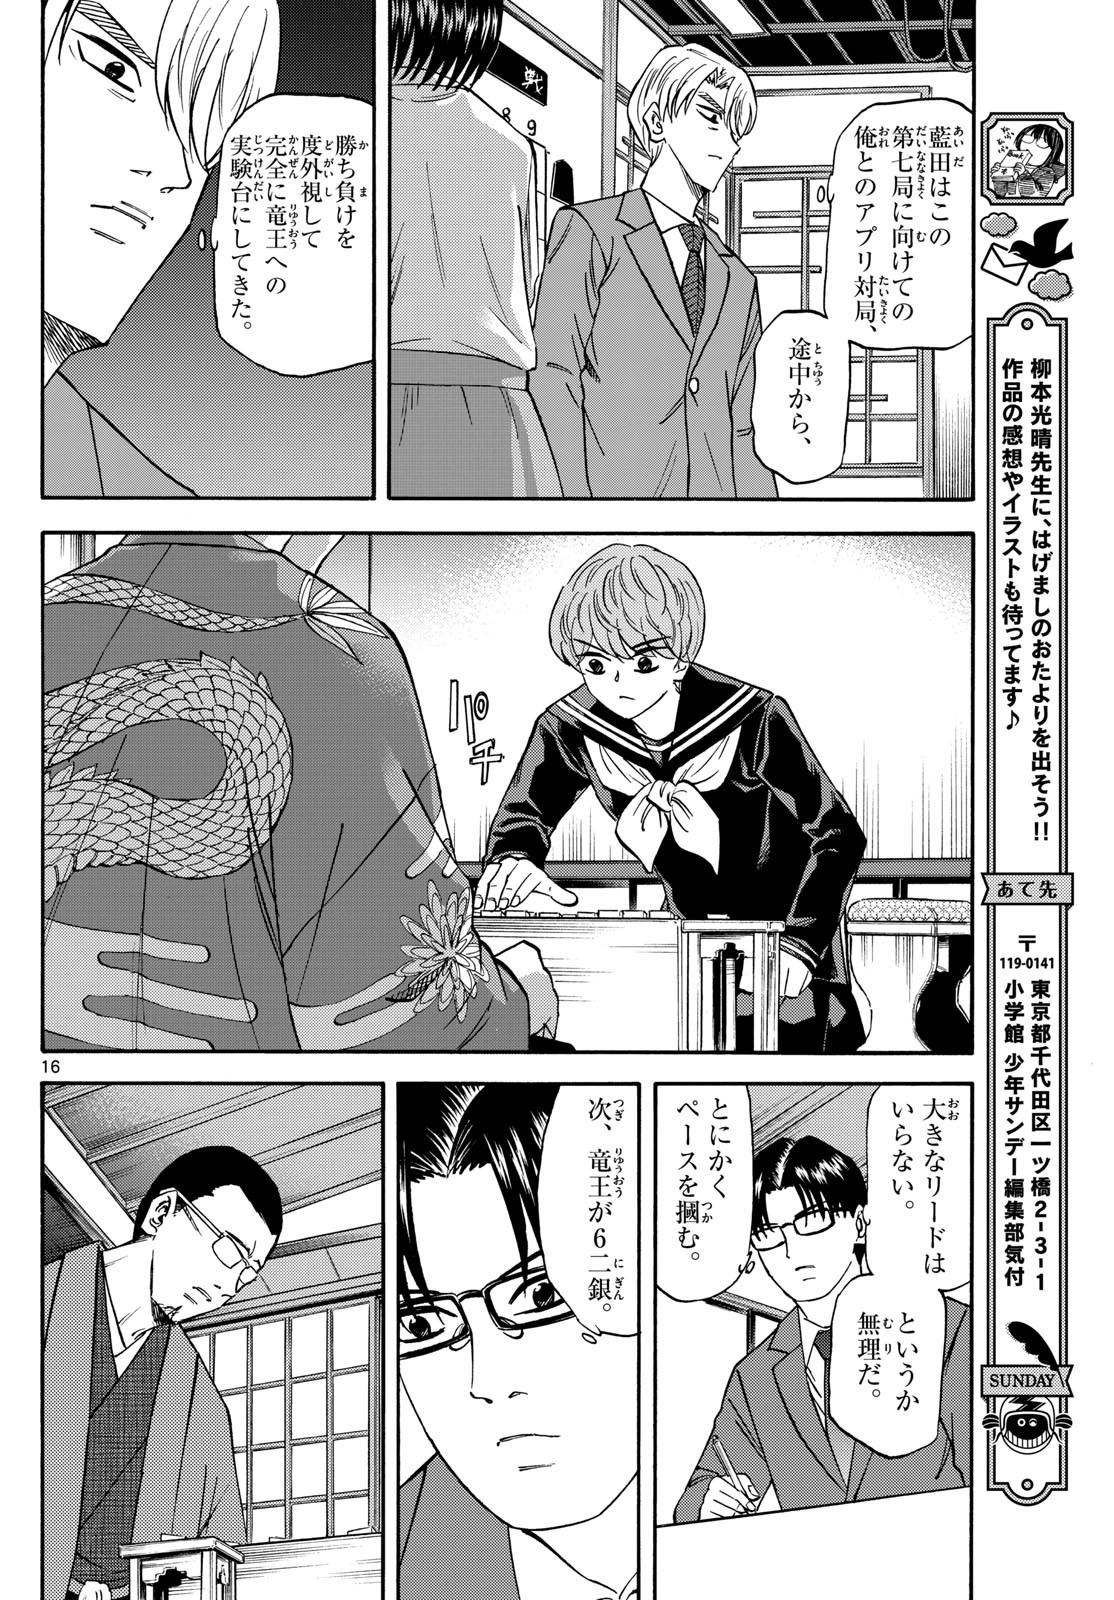 Ryu-to-Ichigo - Chapter 175 - Page 16